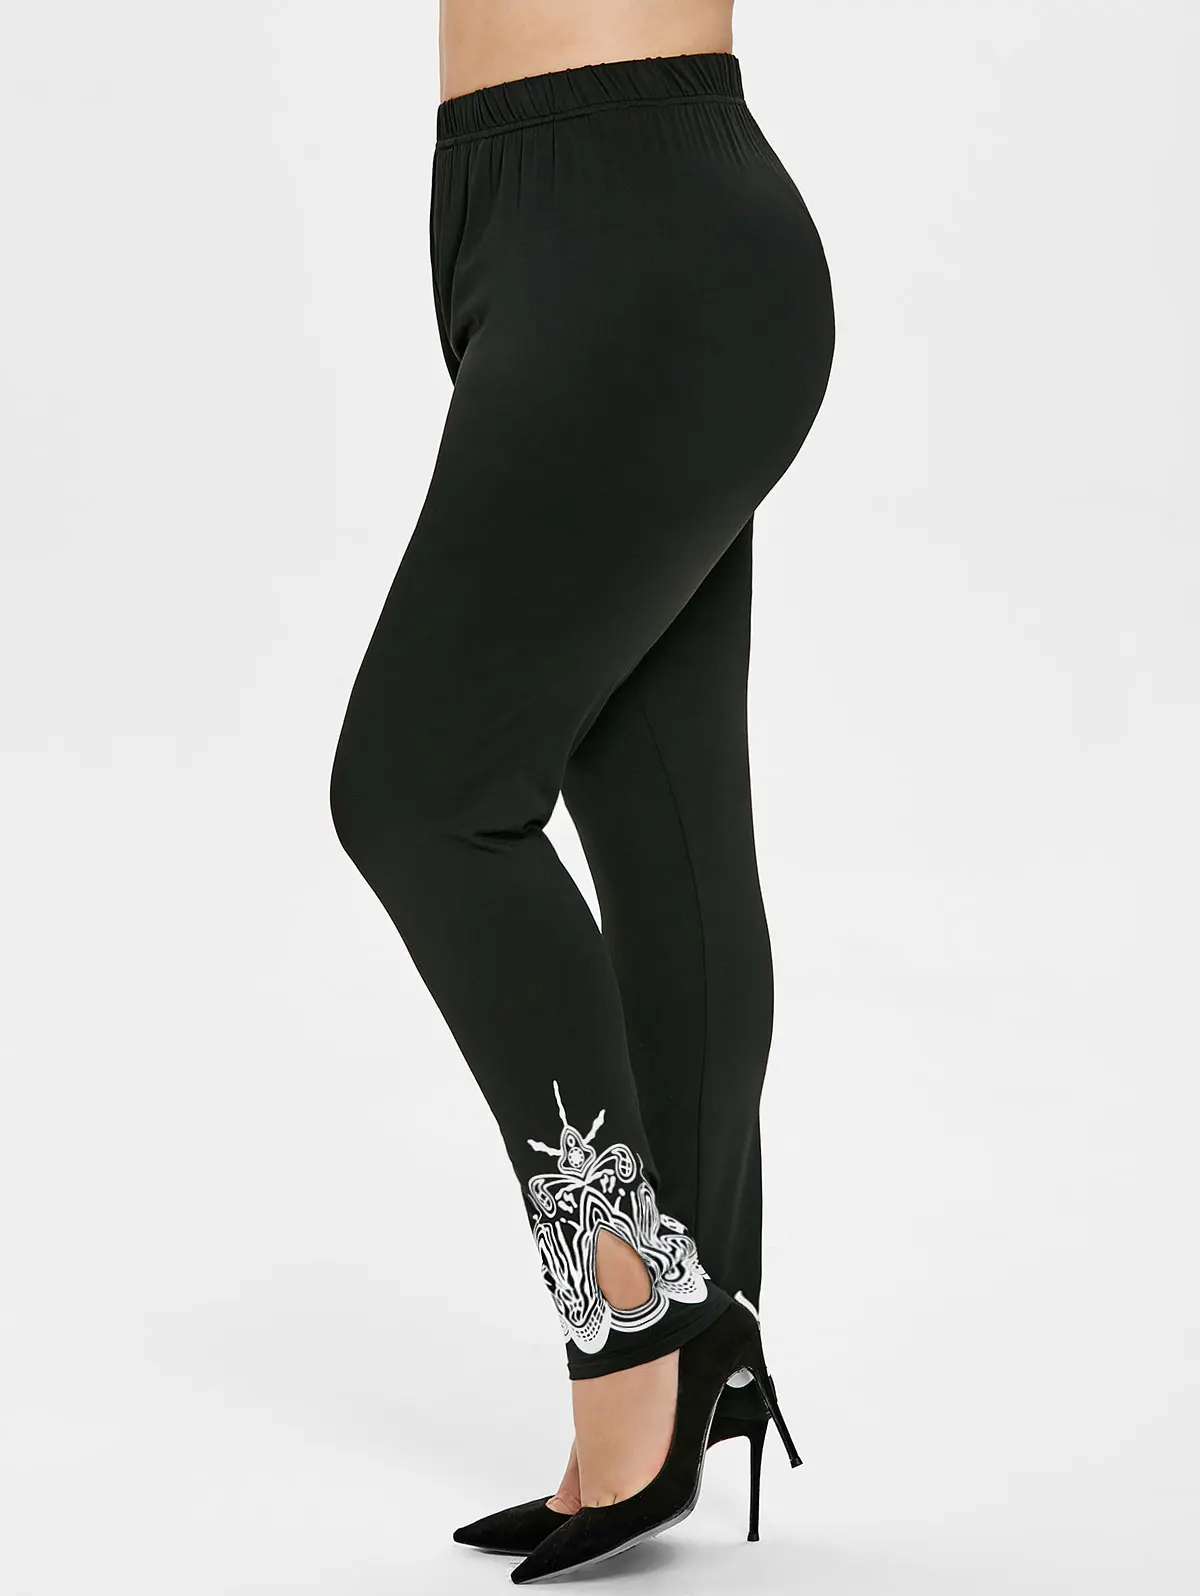 Wisalo/Леггинсы с вырезами больших размеров женские Леггинсы спортивные обтягивающие повседневные штаны с эластичной резинкой на талии